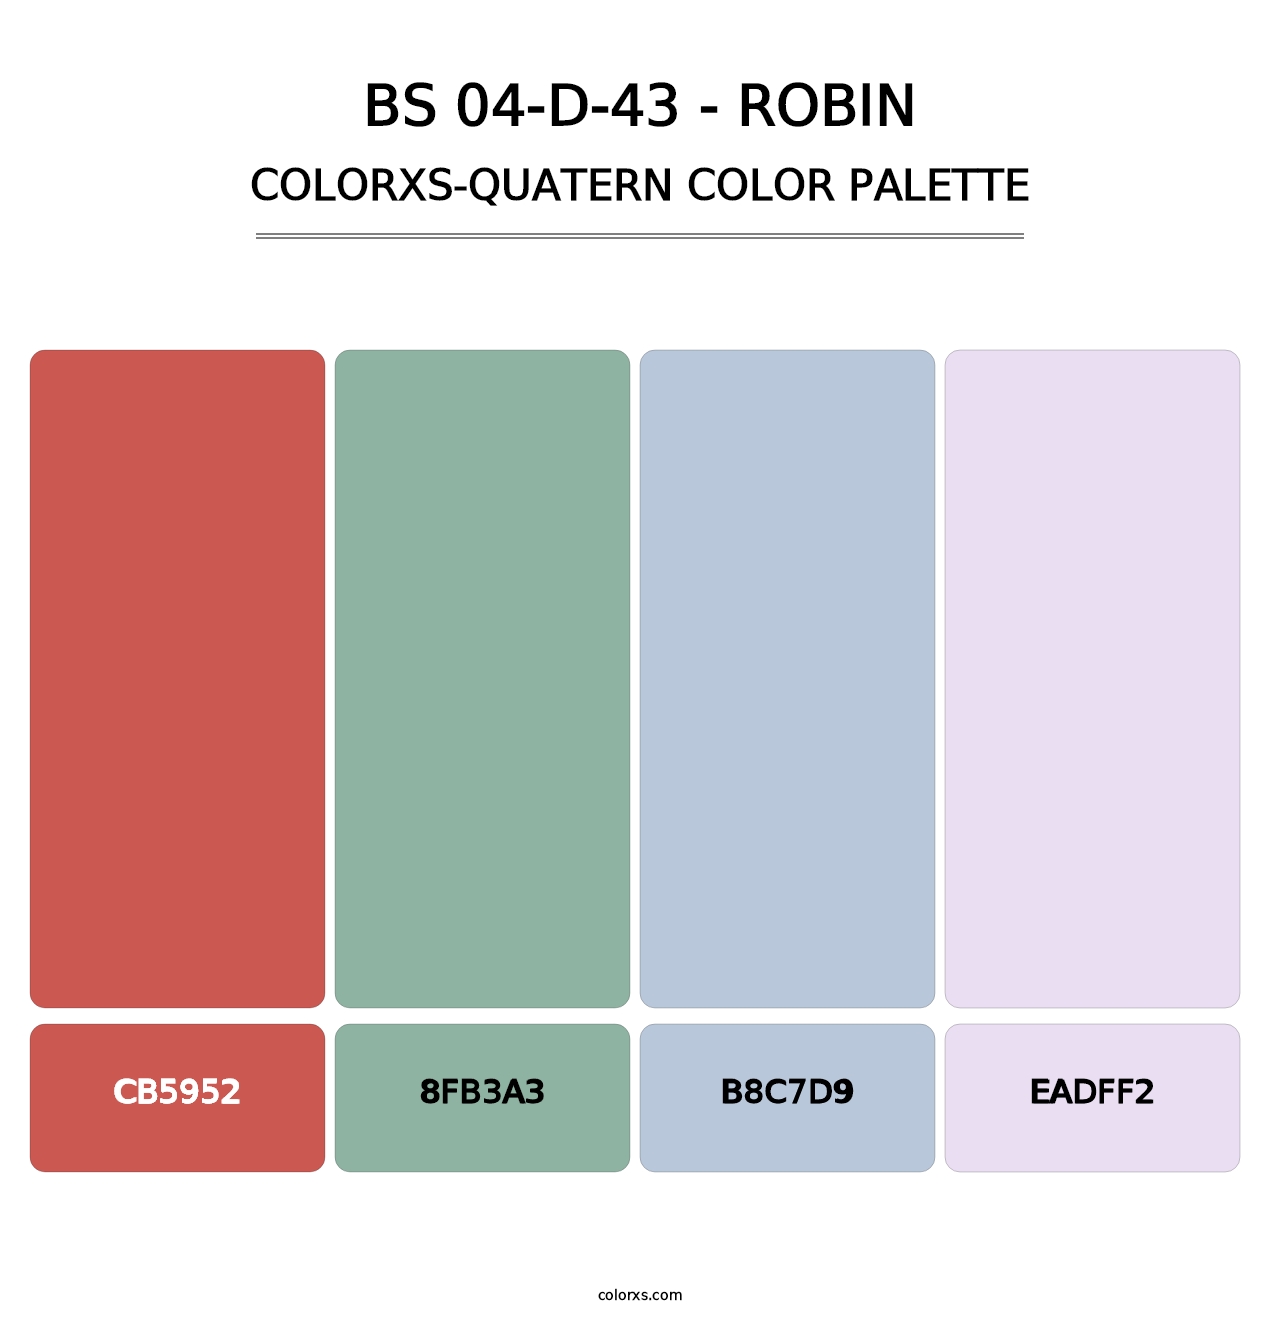 BS 04-D-43 - Robin - Colorxs Quatern Palette